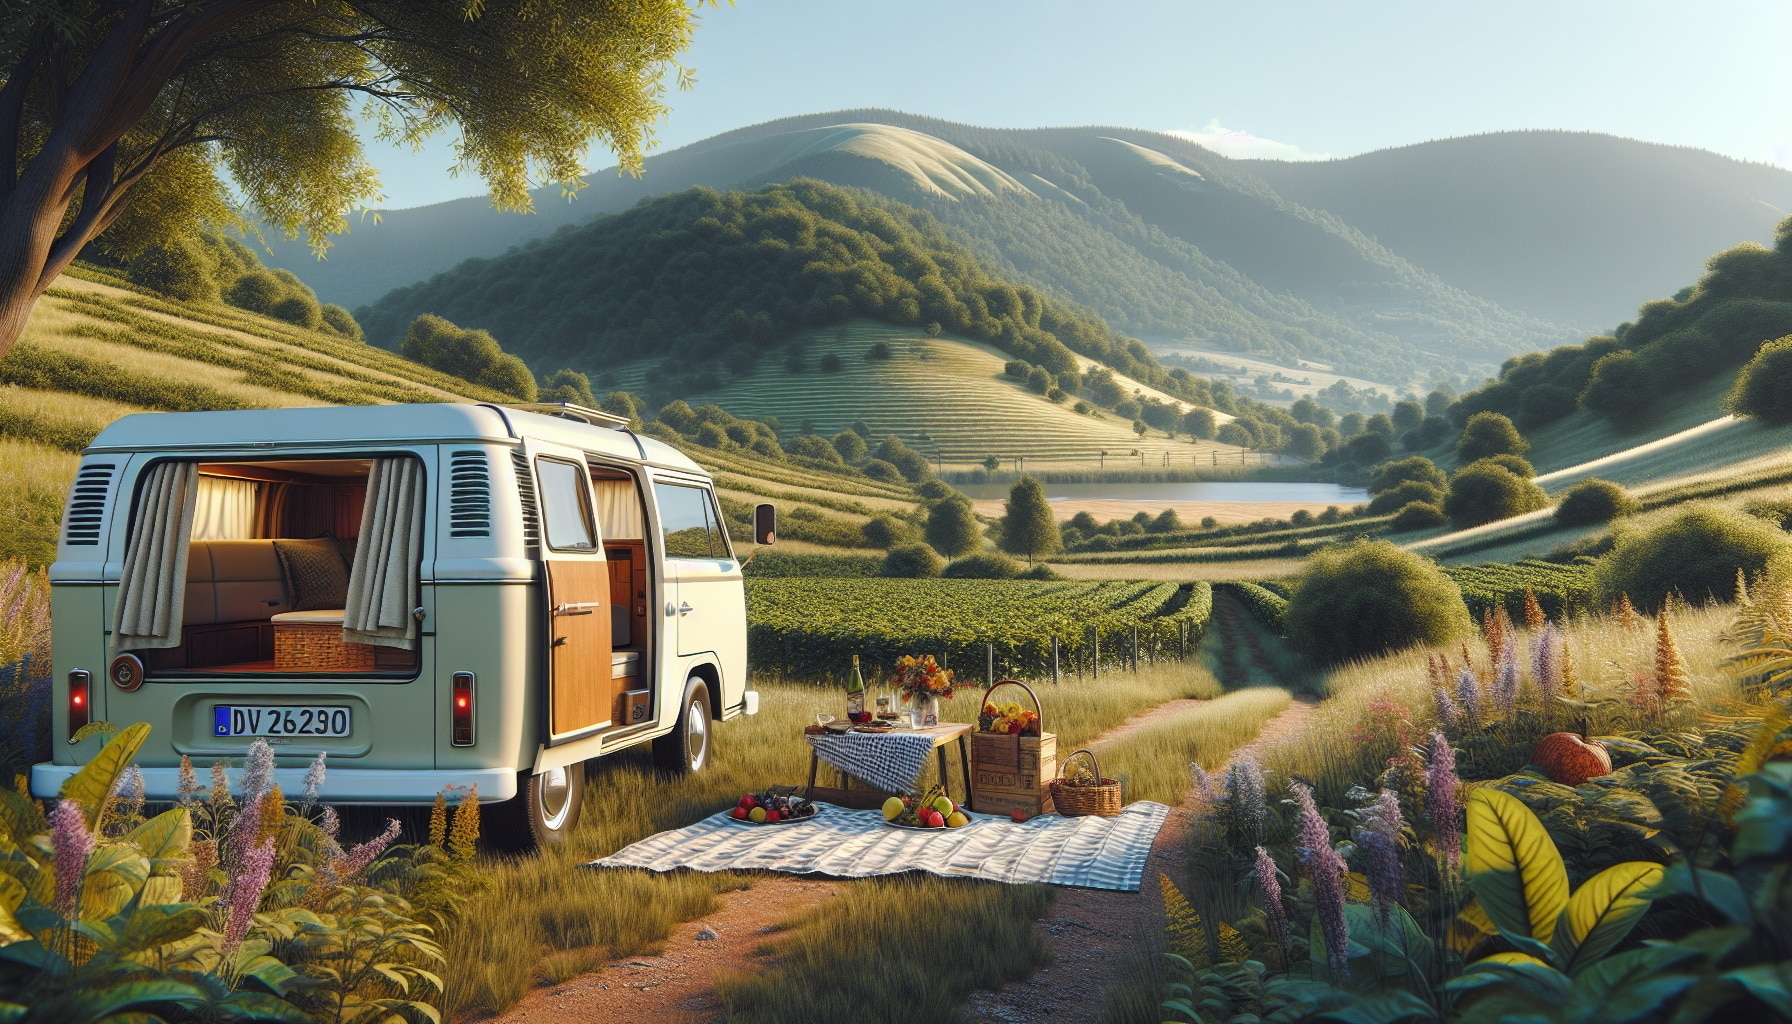 KI generiertes Bild mit Campervan im Vordergrund neben Picknickdecke vor malerischer gründer Landschaft mit sanften Hügeln